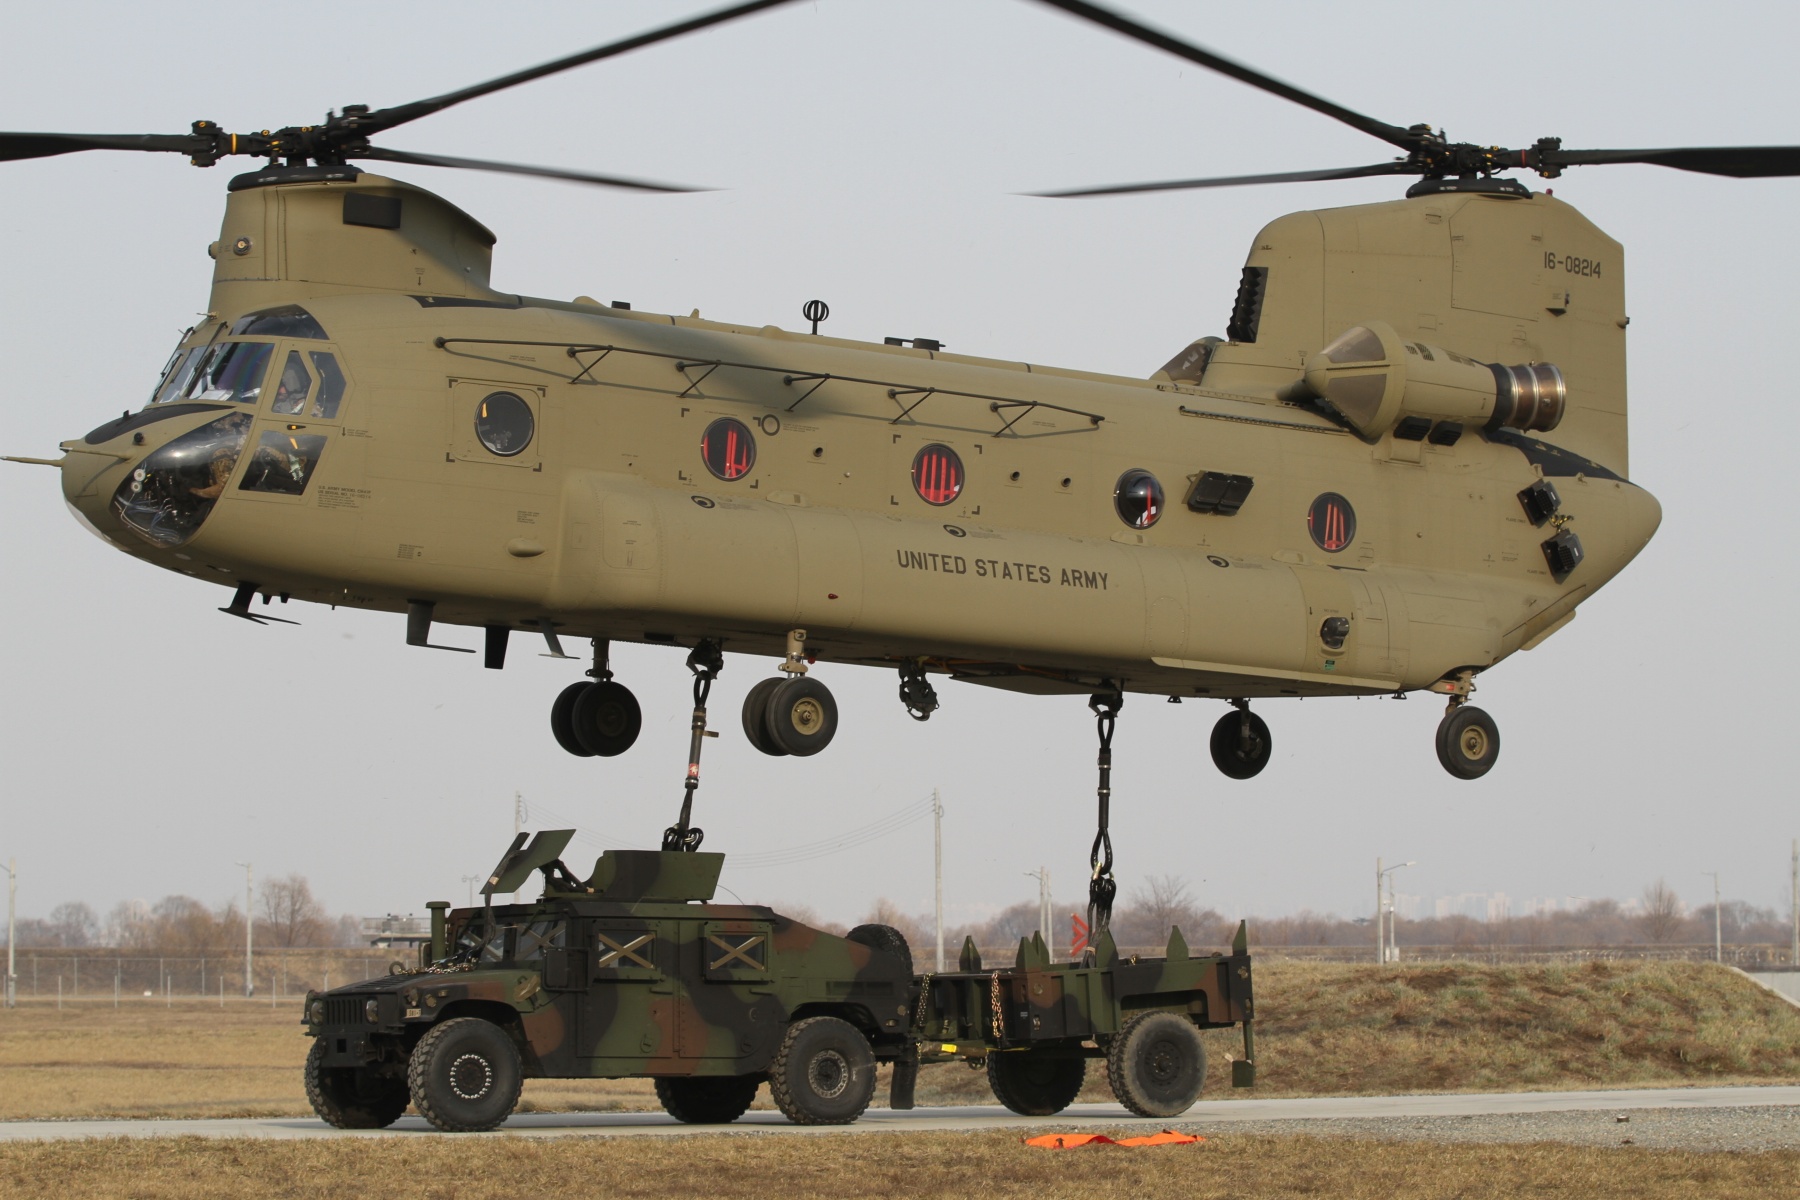 Взлет тяжелого вертолета  CH-47 Chinook 123-го батальона обеспечения Армии США с многоцелевым колесным тягачом с прицепом на внешней подвеске, фото сделано 7 января 2019 года на базе Camp Humphreys, Республика Корея